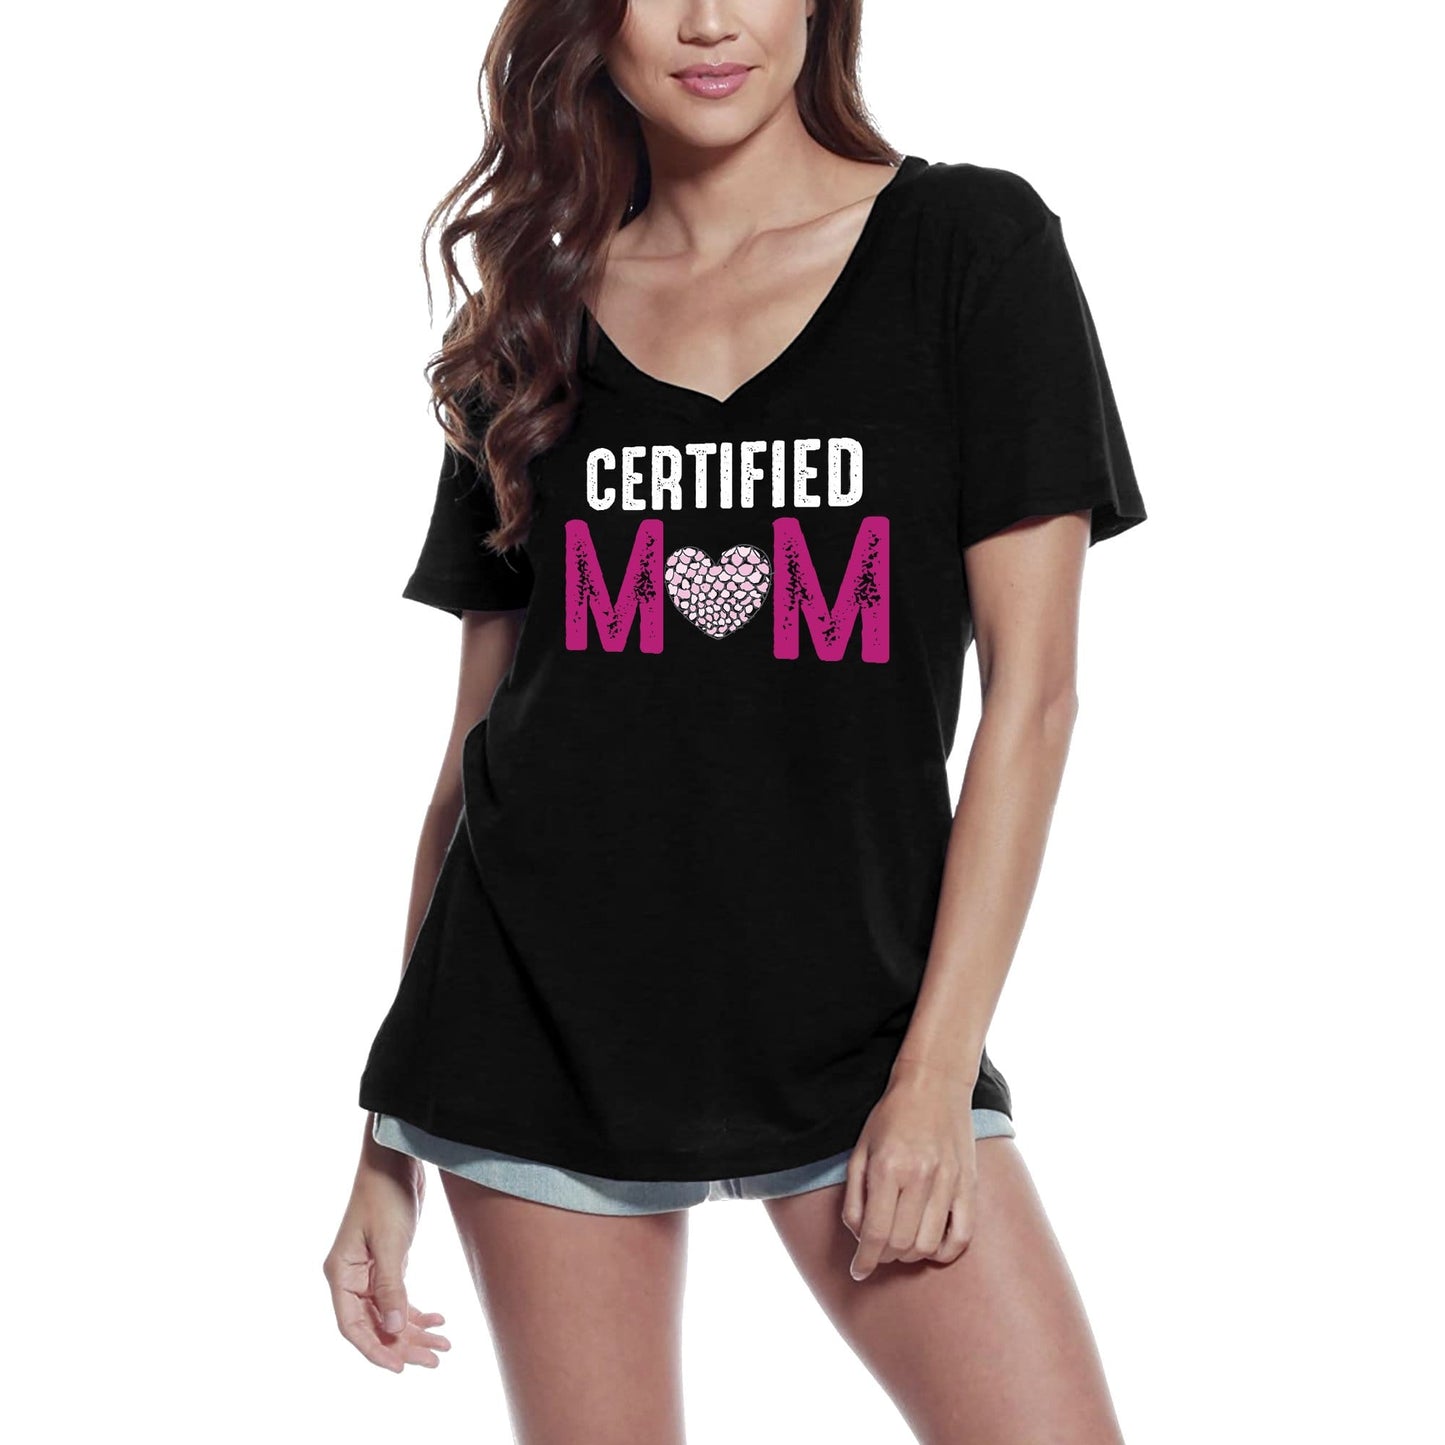 ULTRABASIC Women's T-Shirt Certified Mom - Heart Short Sleeve Tee Shirt Tops